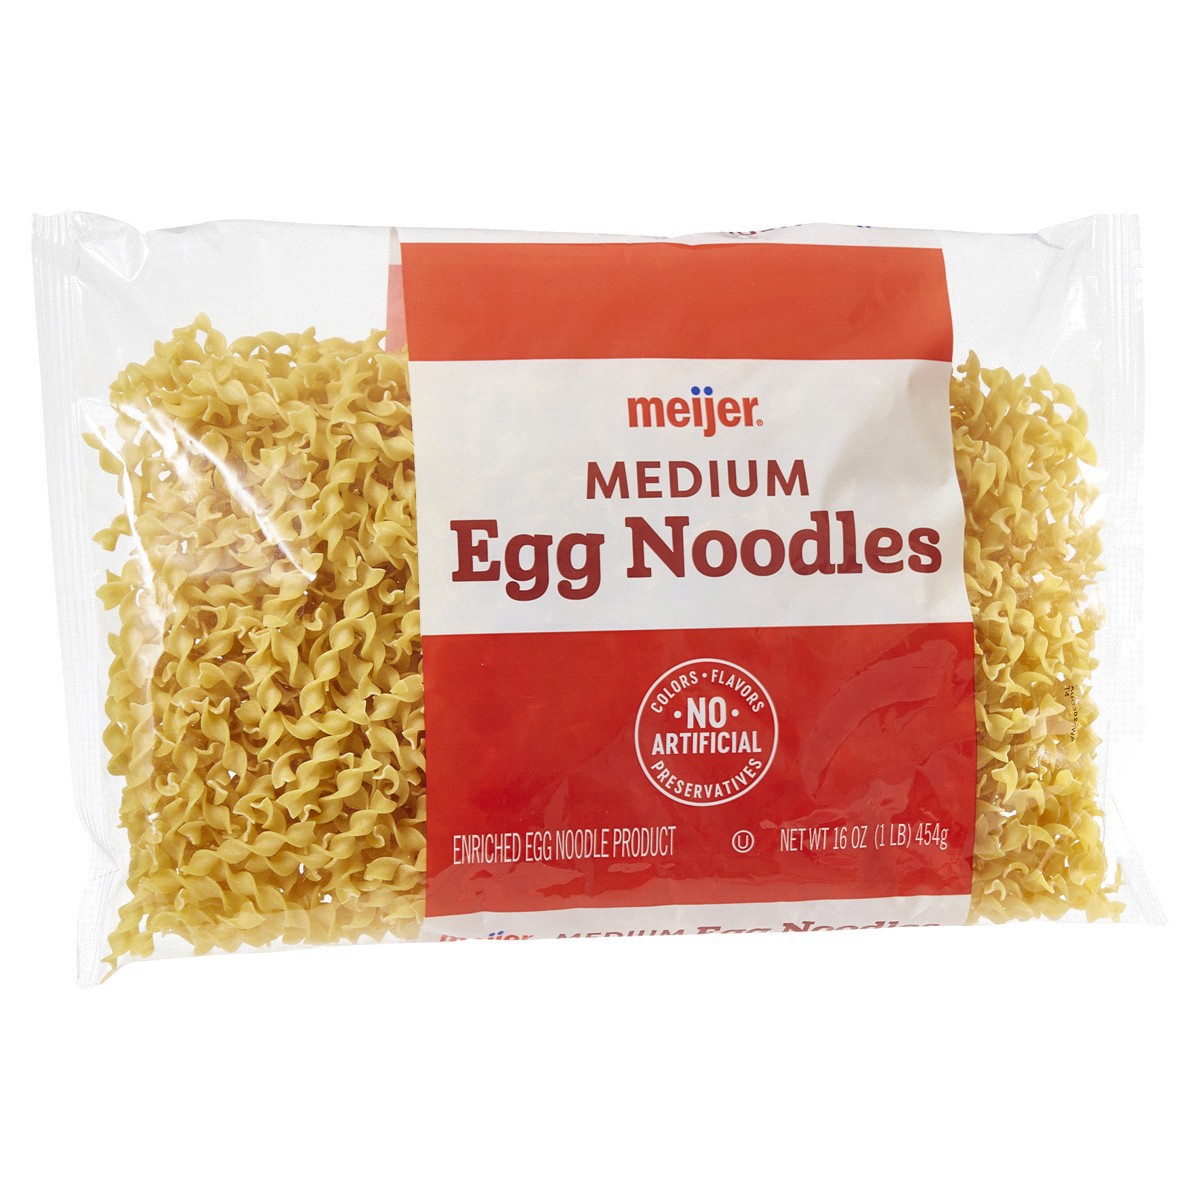 slide 5 of 29, Meijer Medium Egg Noodles, 16 oz